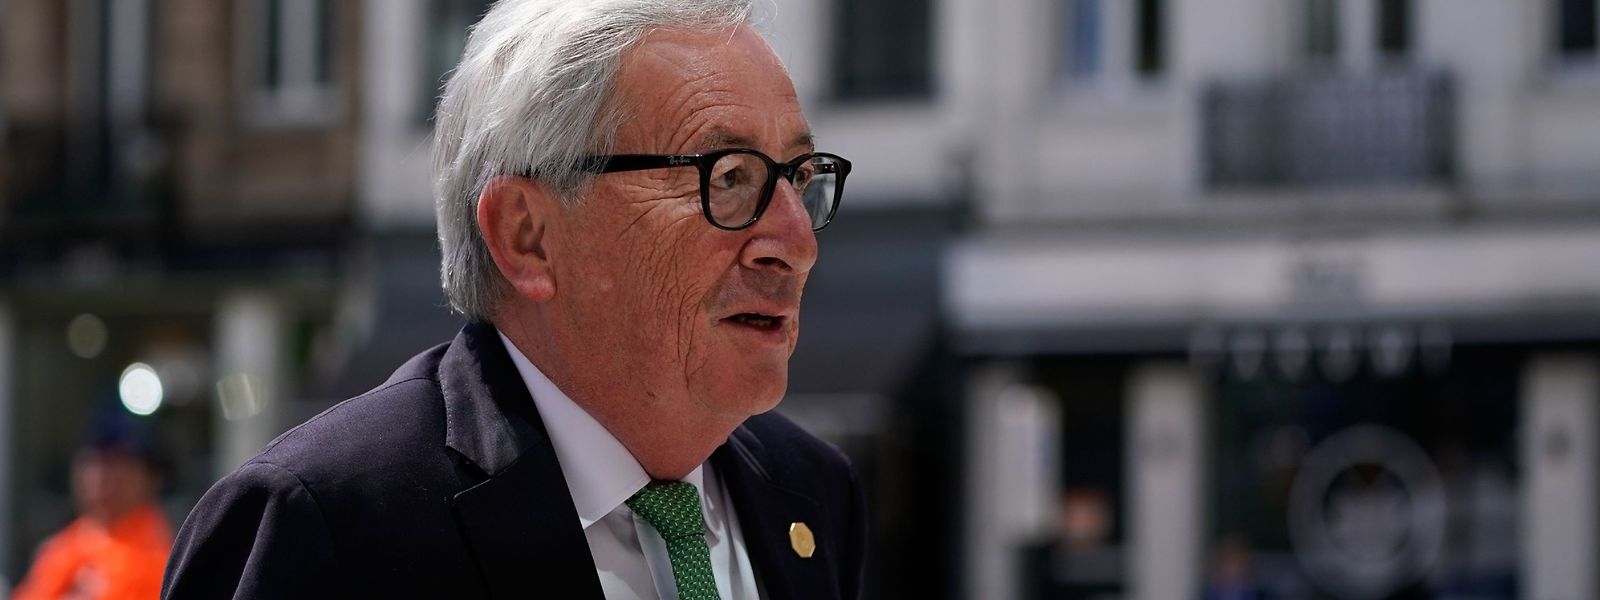 Jean-Claude Juncker ist nur noch wenige Monate im Amt.